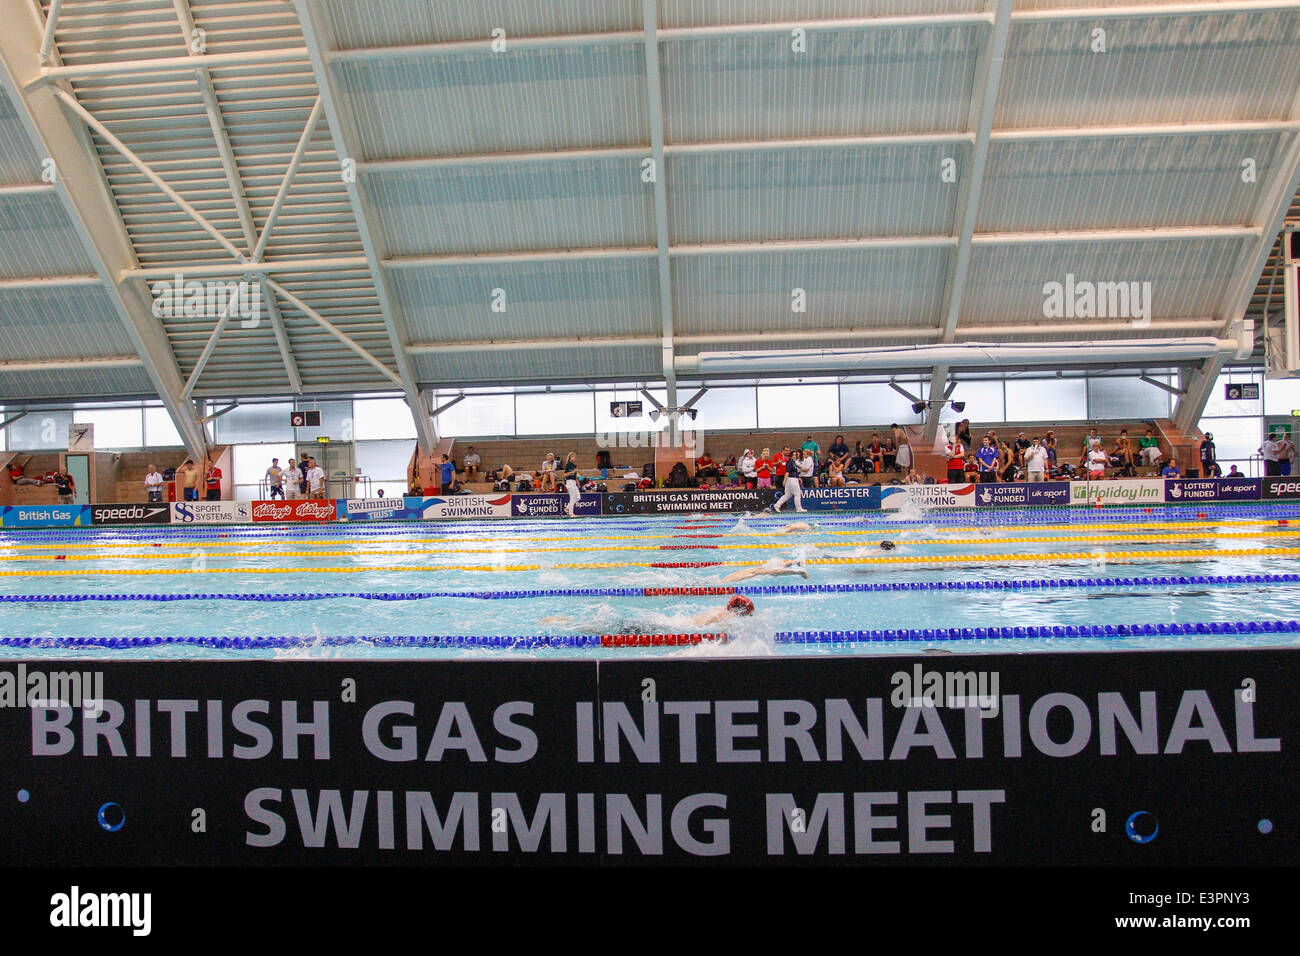 Manchester, UK. 27 Juin, 2014. Une vue générale de l'arène au cours de la British Gas International Swim Meet à la Manchester Centre aquatique. Credit : Action Plus Sport Images/Alamy Live News Banque D'Images